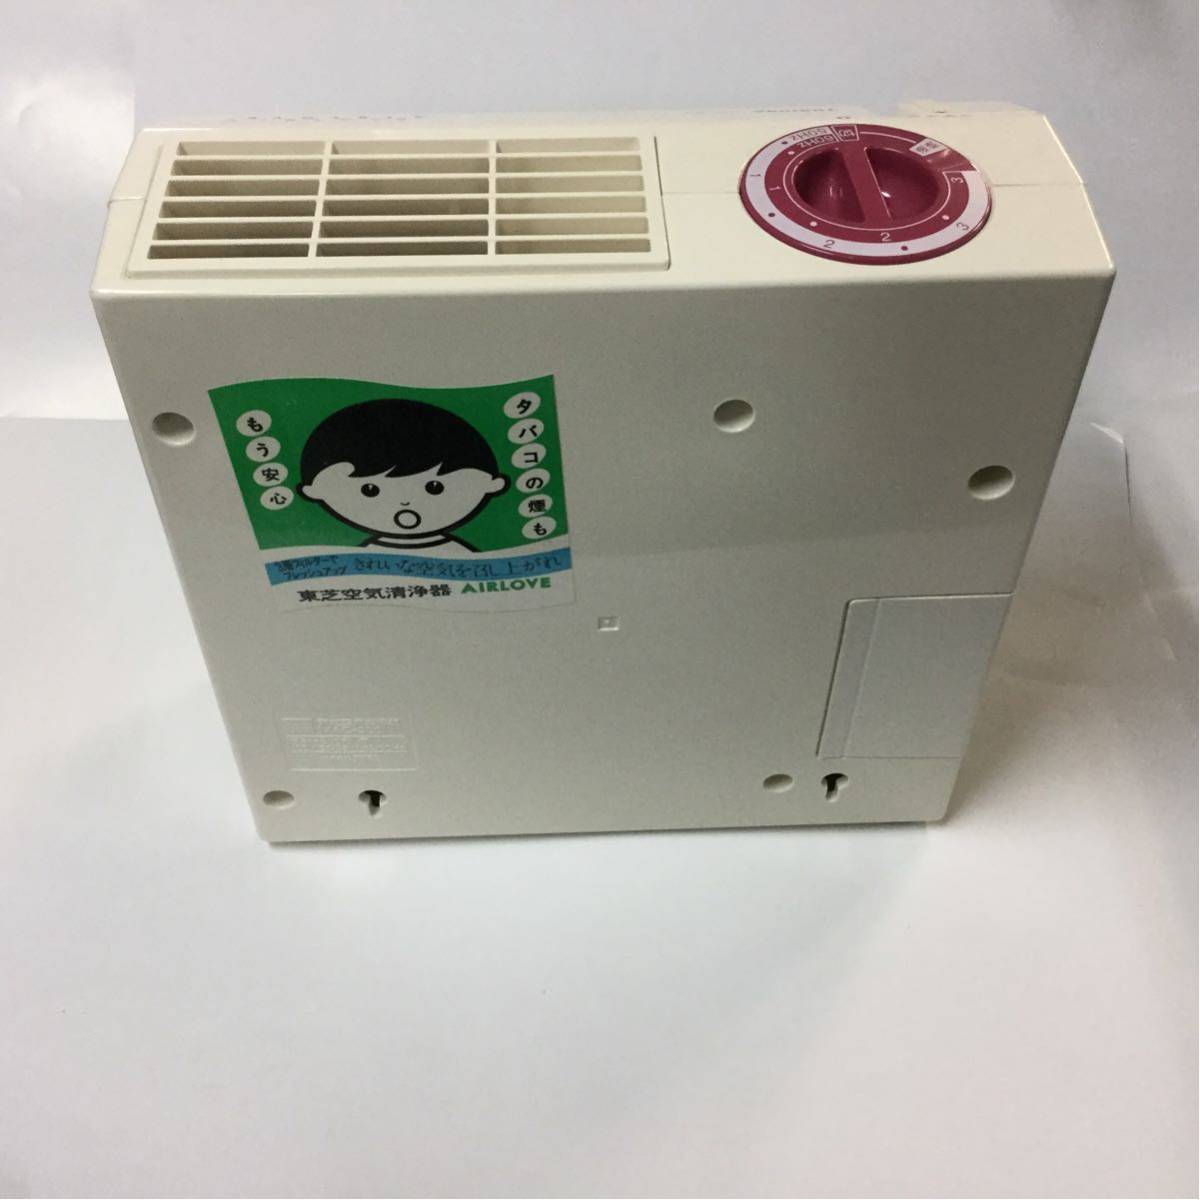 TOSHIBA  очиститель воздуха  MAC200  рабочий товар    Toshiba 